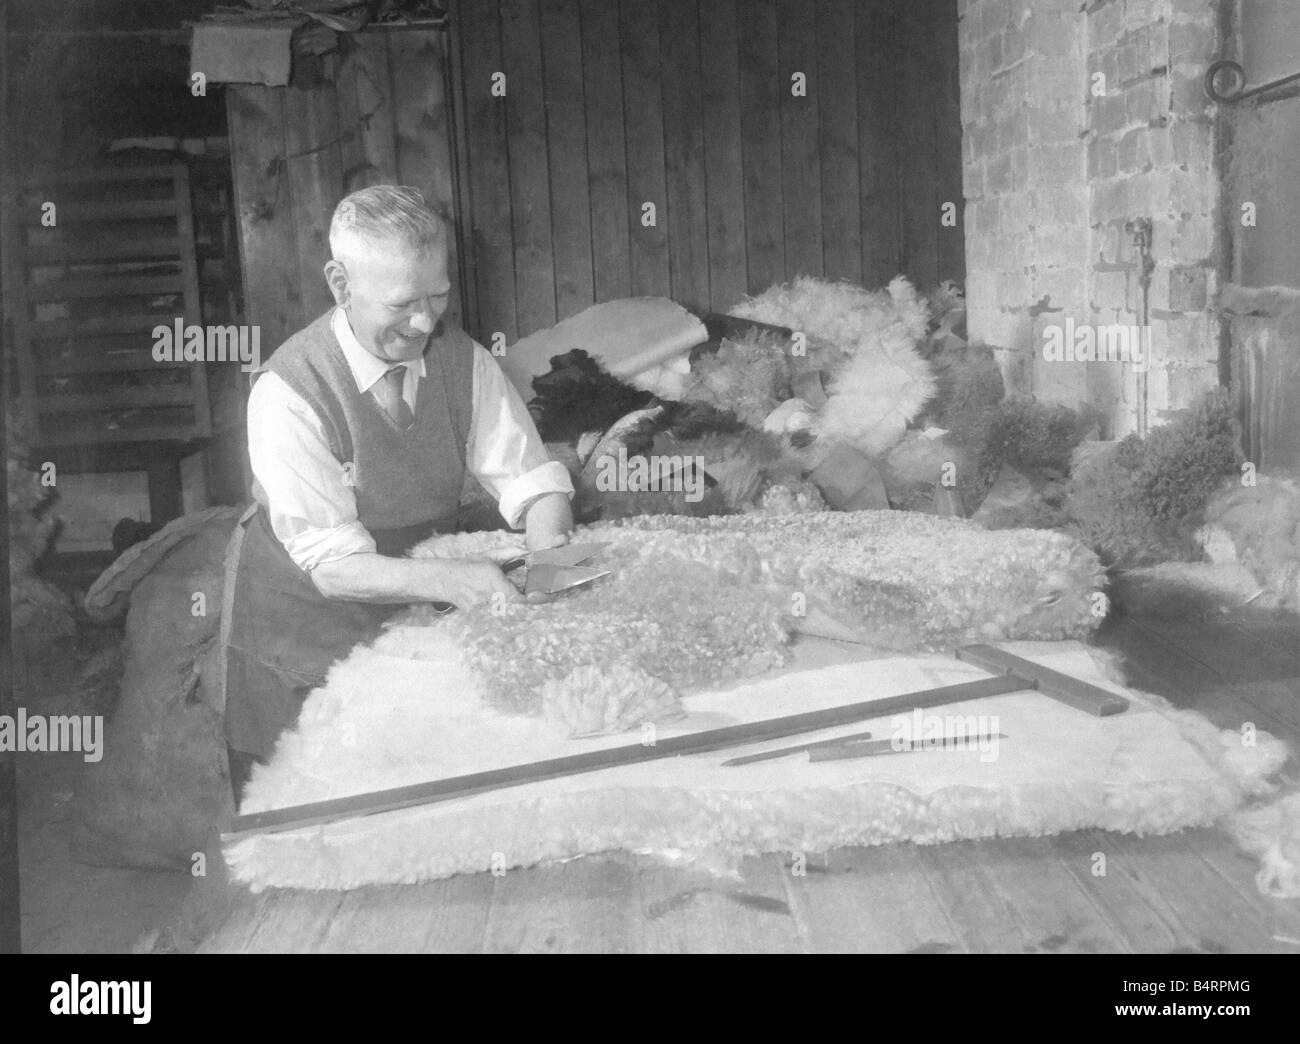 Schafe Haut Teppich machen ist eines der alten etablierten Berufe in Stourbridge ein Handwerker dieses Werkes ist Herr David Watkins, hat seit Ith seine Firma er 45 Jahre in die heikle Arbeit des Ausschnitts beschäftigt ist wo könnte ein falscher Schnitt ein Prachtexemplar ruinieren Stockfoto